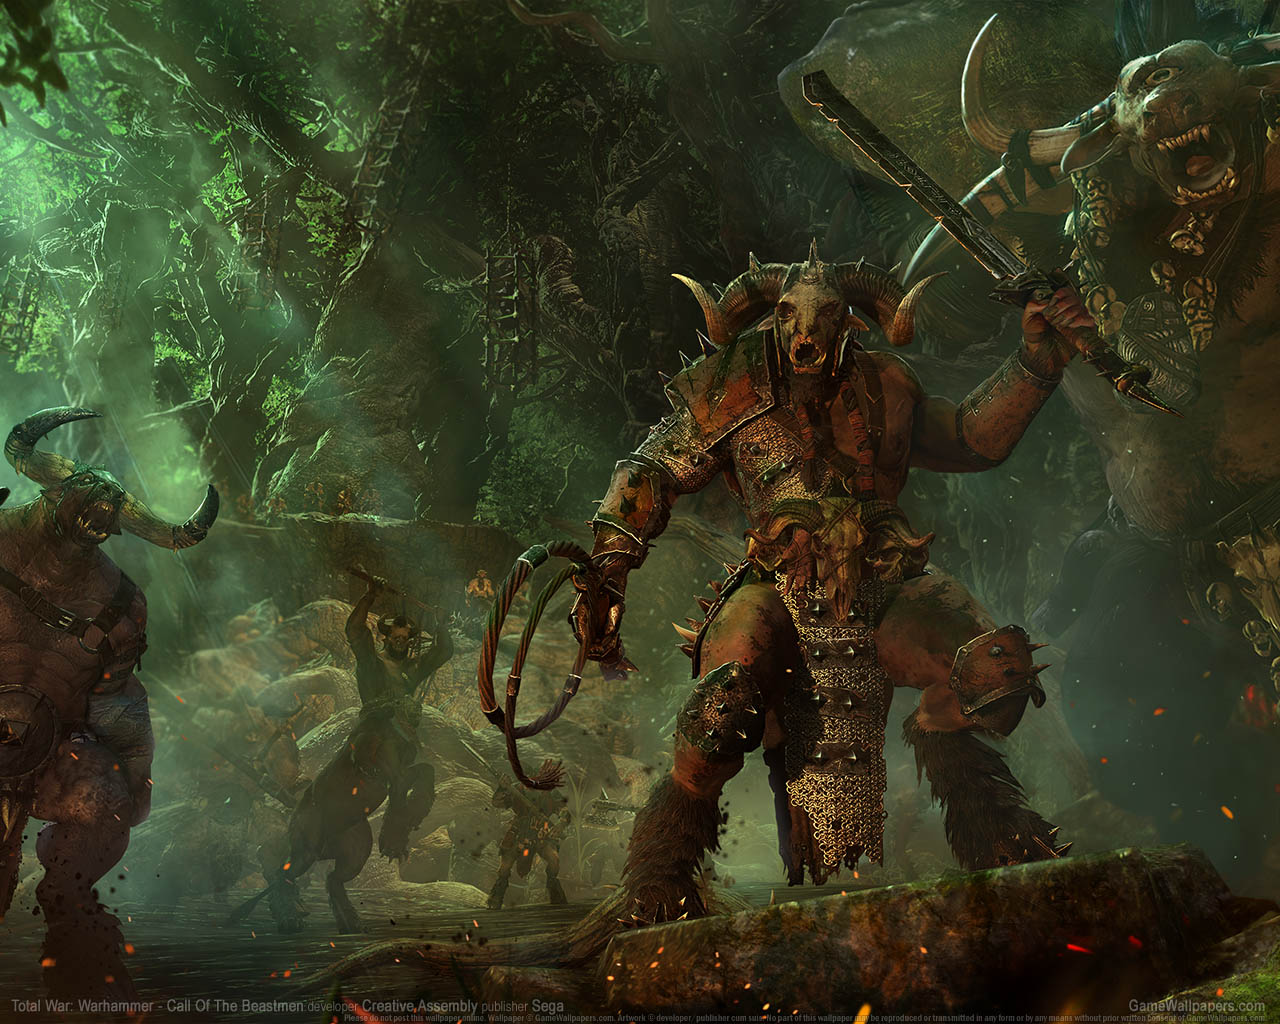 Total War%253A Warhammer - Call of the Beastmen fond d'cran 01 1280x1024